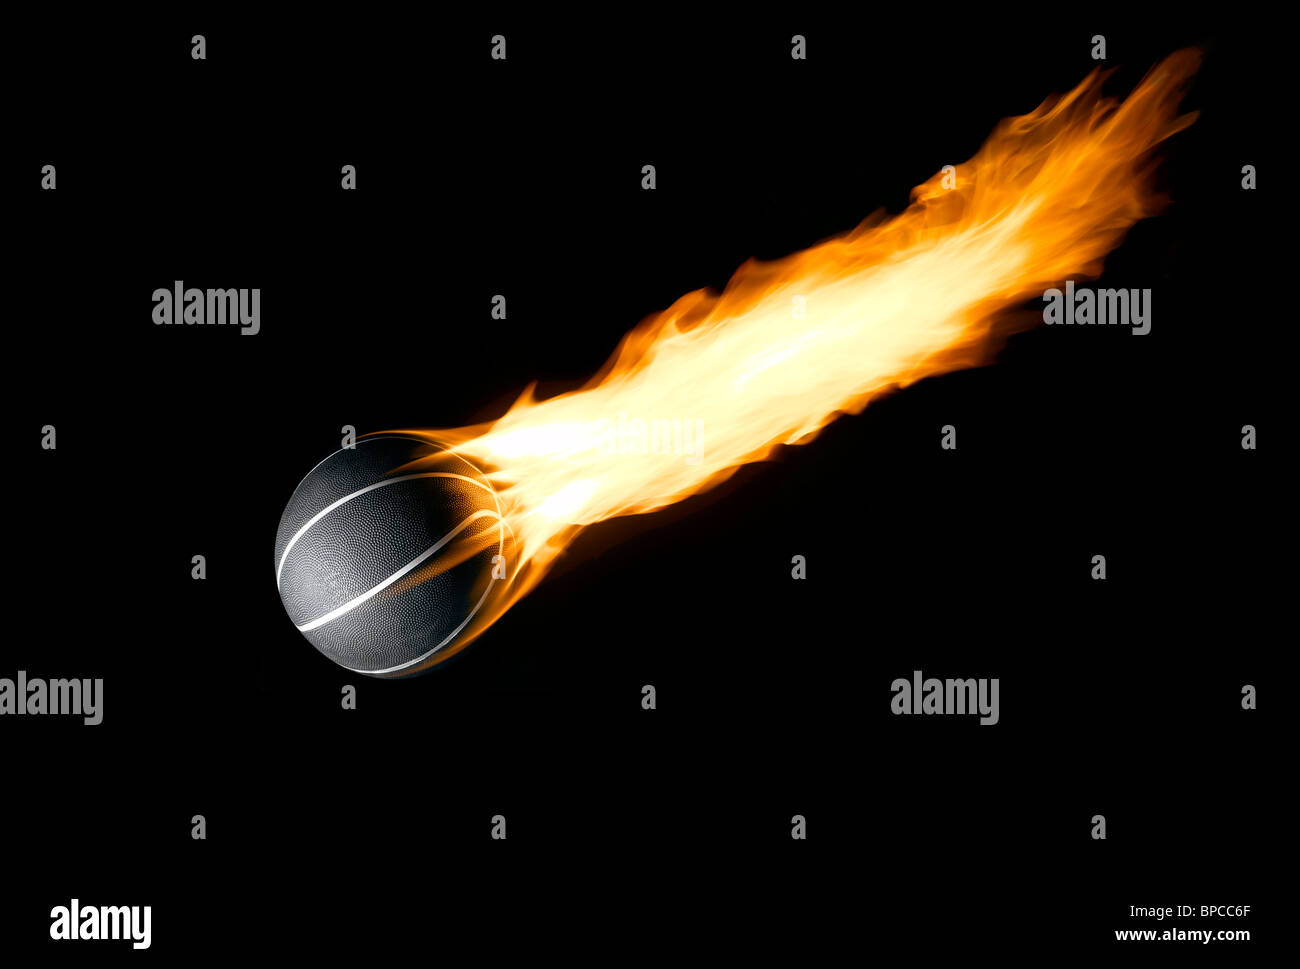 Ein Basketball mit einem brennenden Schweif wie ein Komet Stockfoto